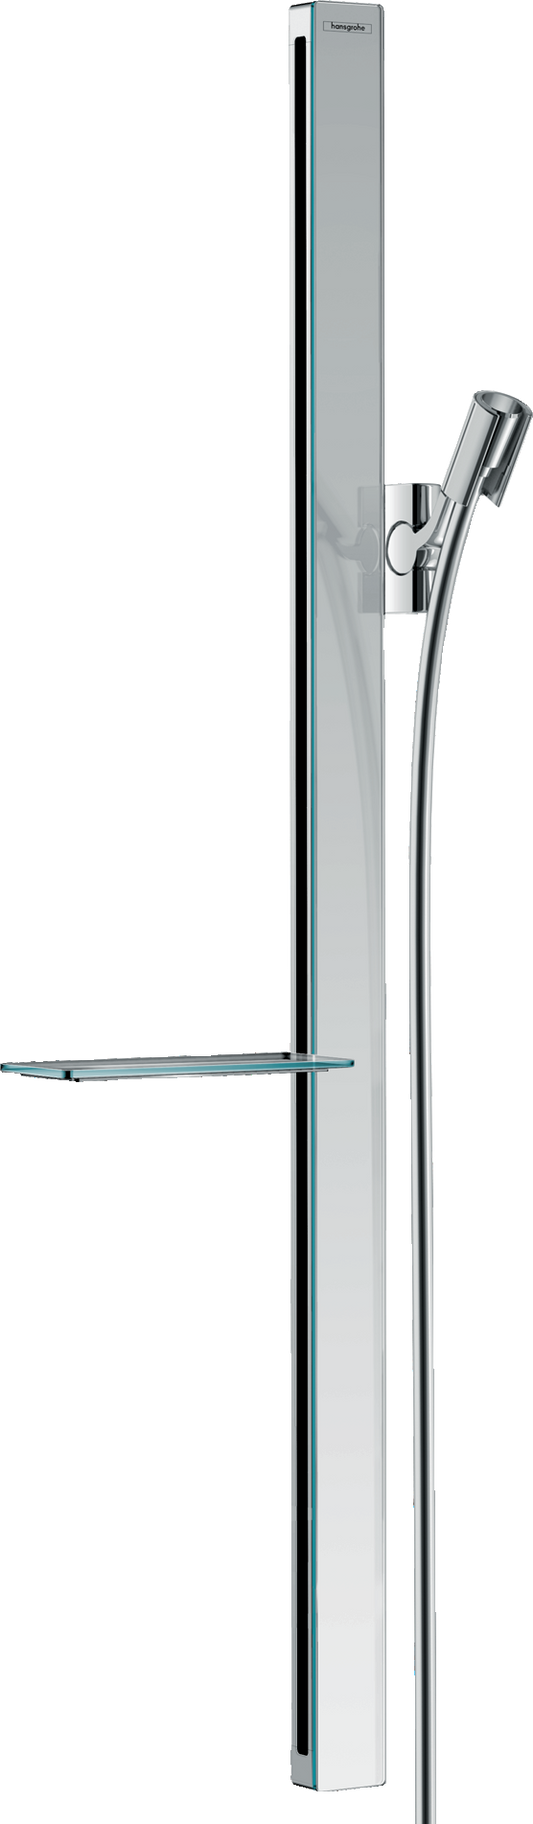 Unica Shower bar E 90 cm with Isiflex shower hose 160 cm